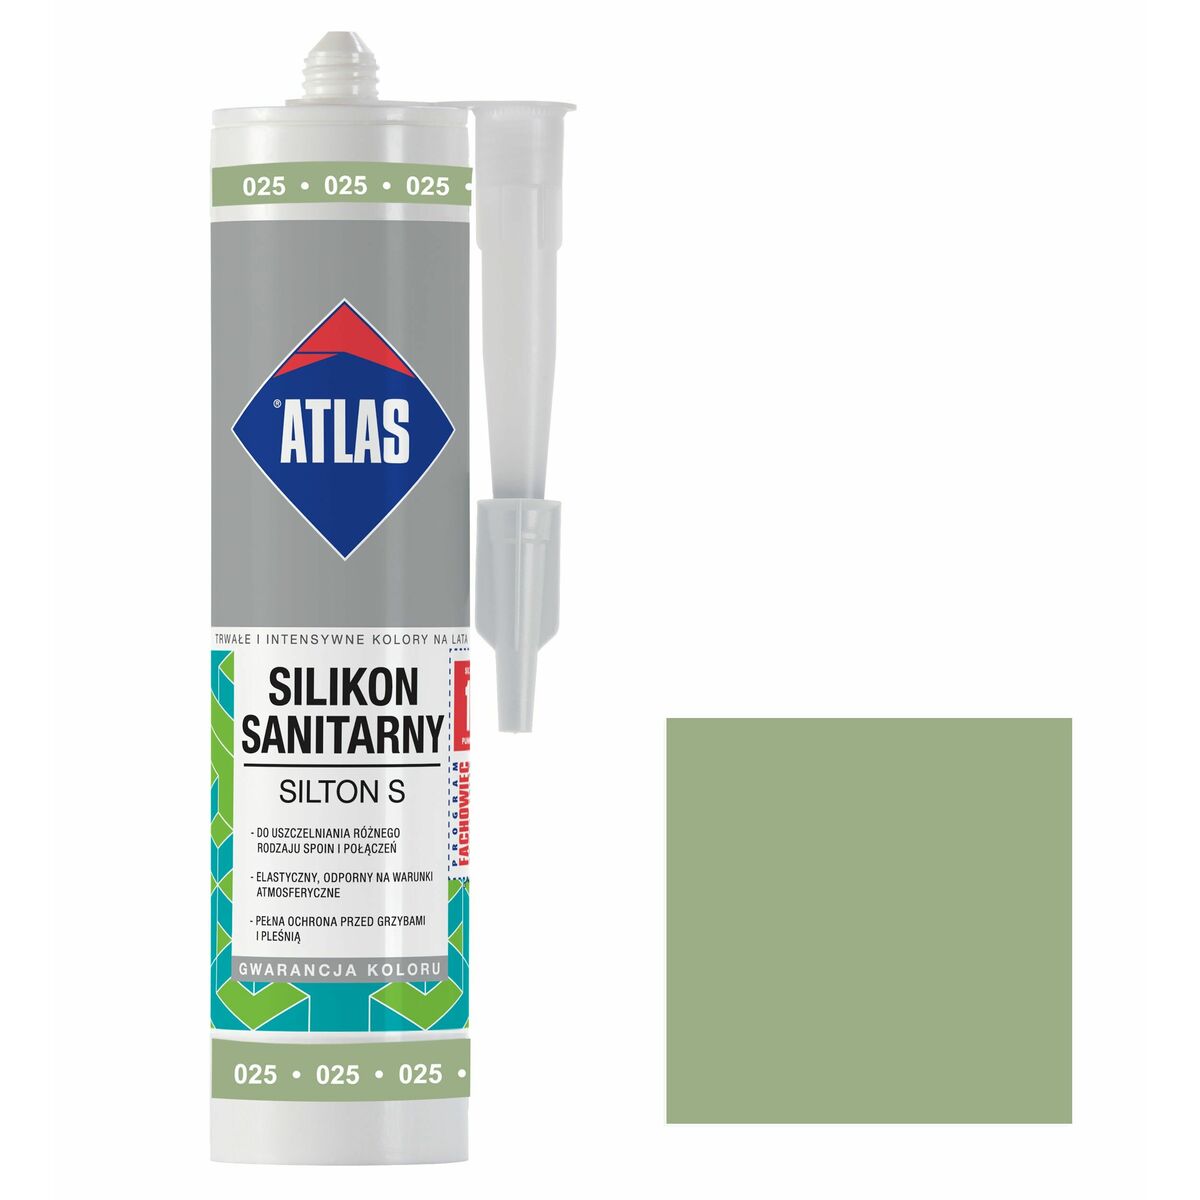 Silikon sanitarny  025 280 ml Jasny zielony Atlas